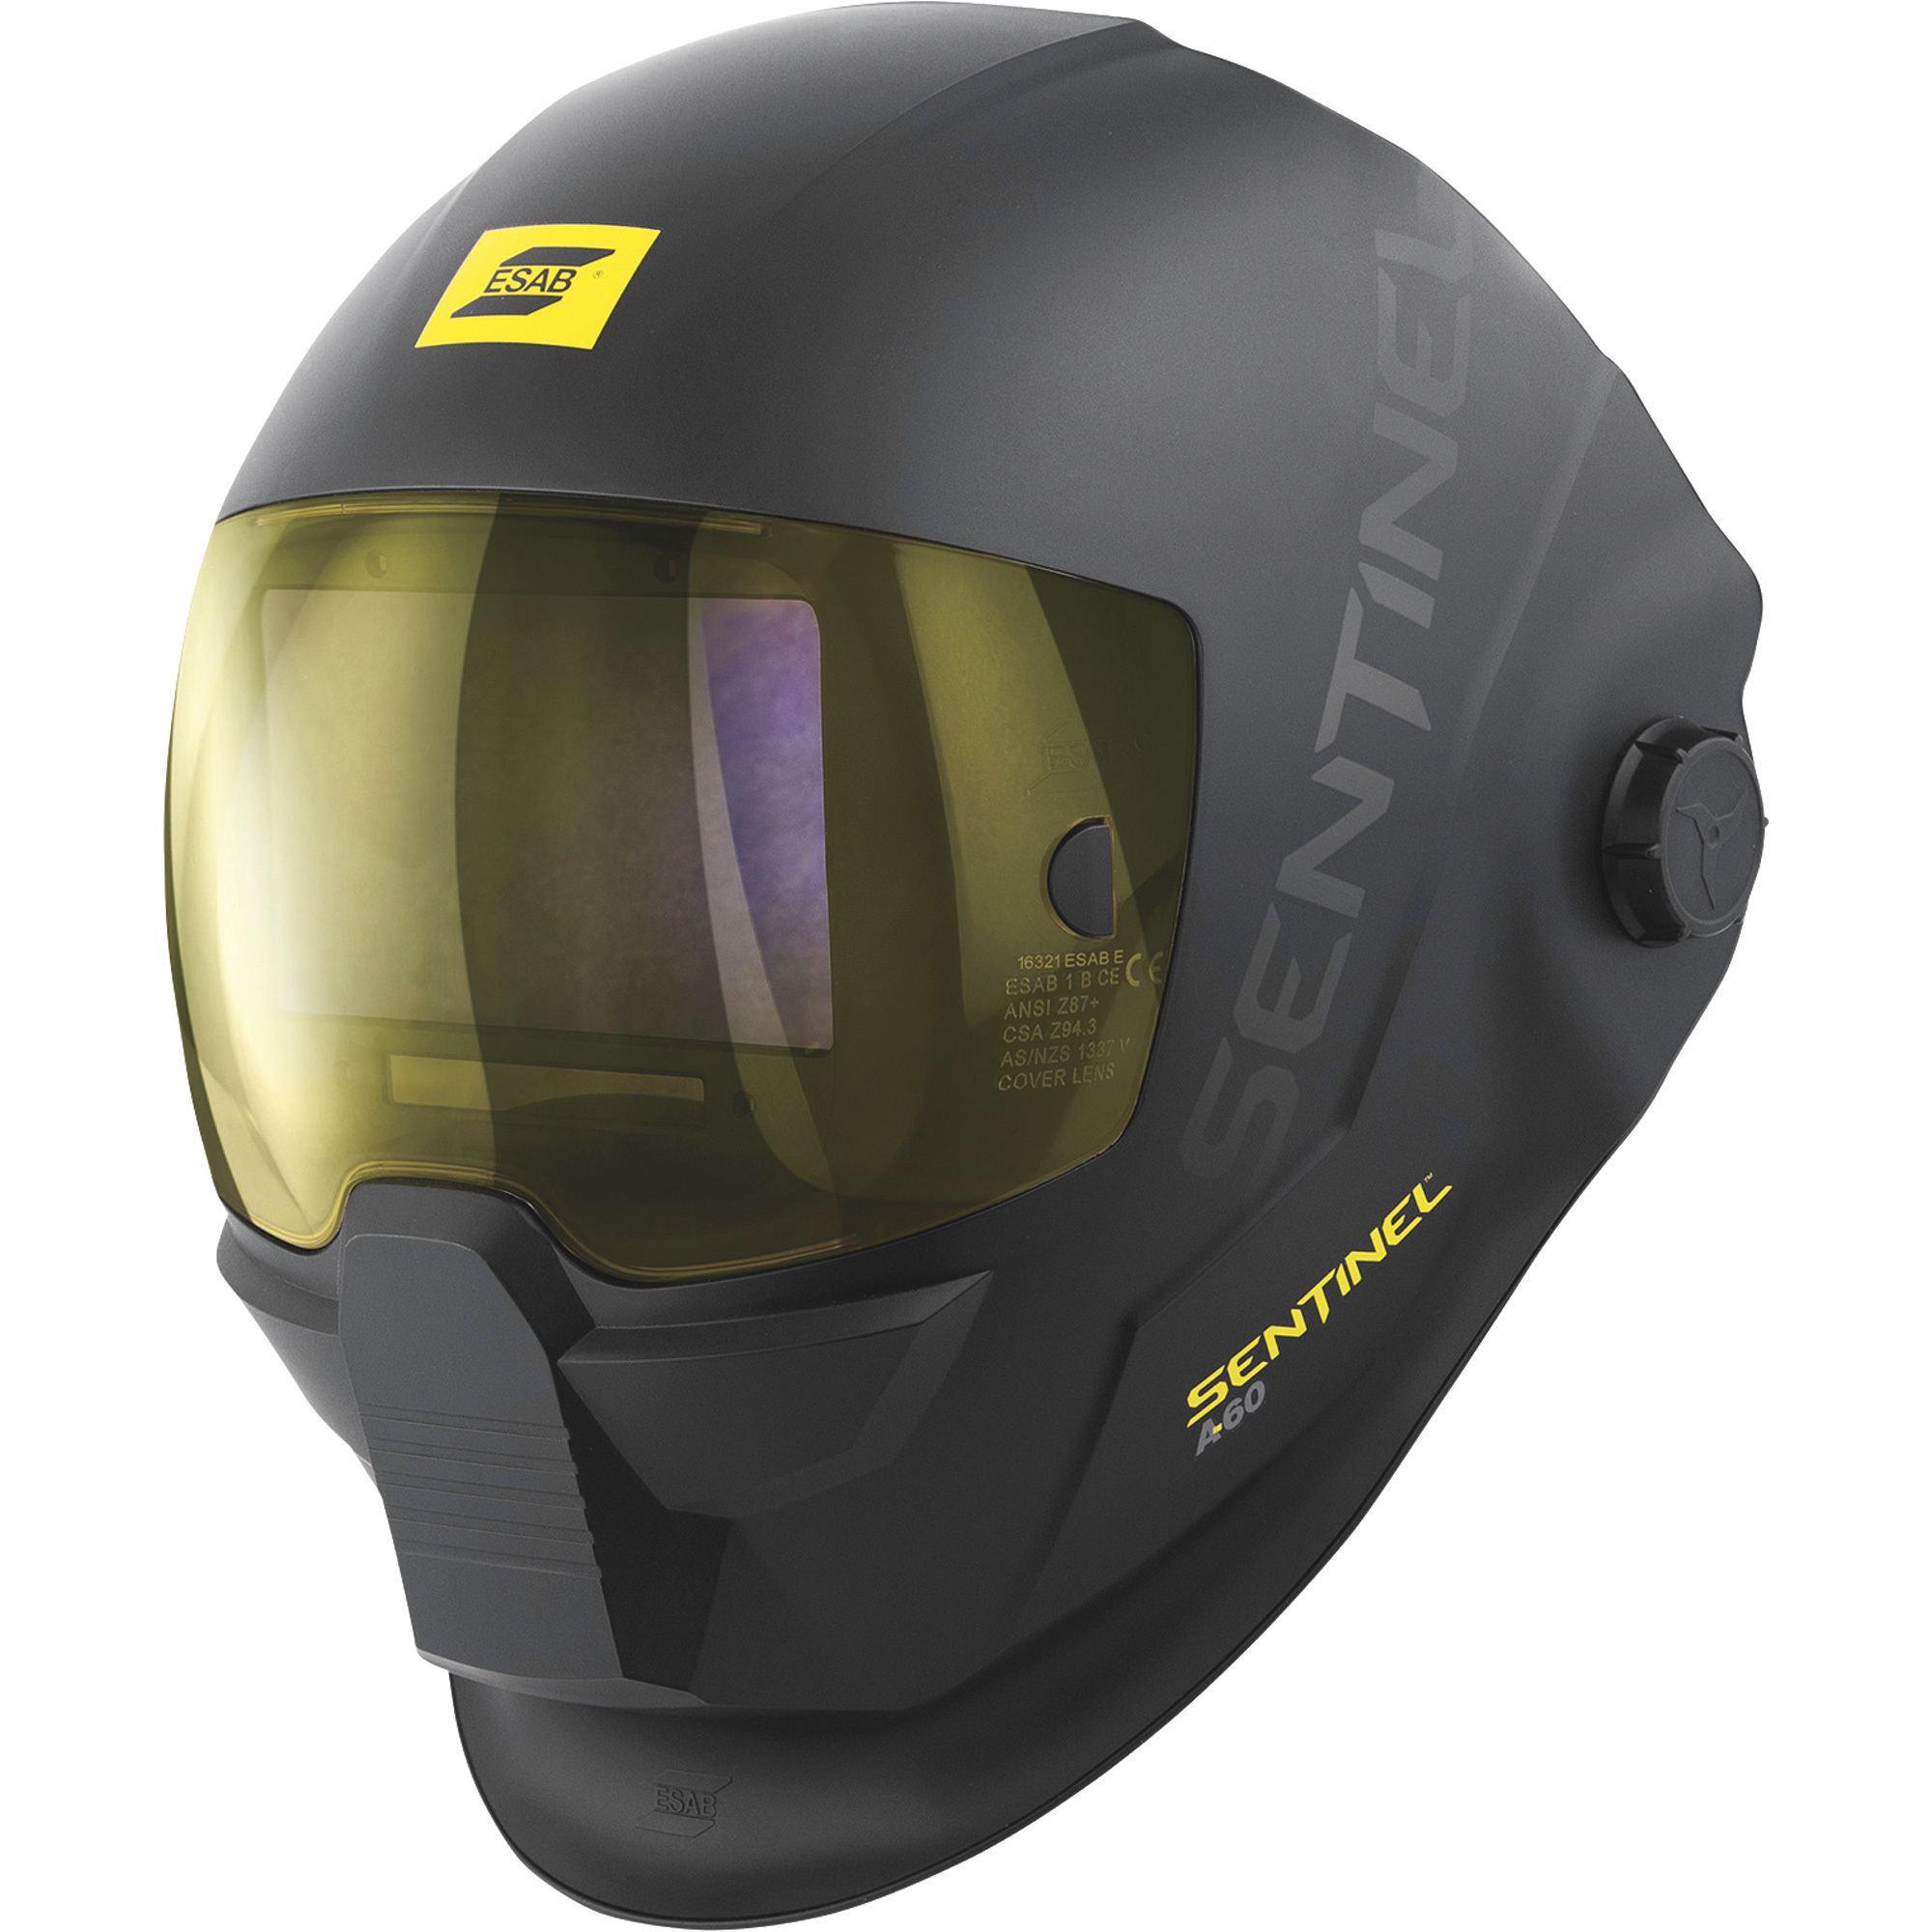 ESAB Sentinel A60 Auto-Darkening Welding Helmet with Grind Mode â Black, Model 0700600860